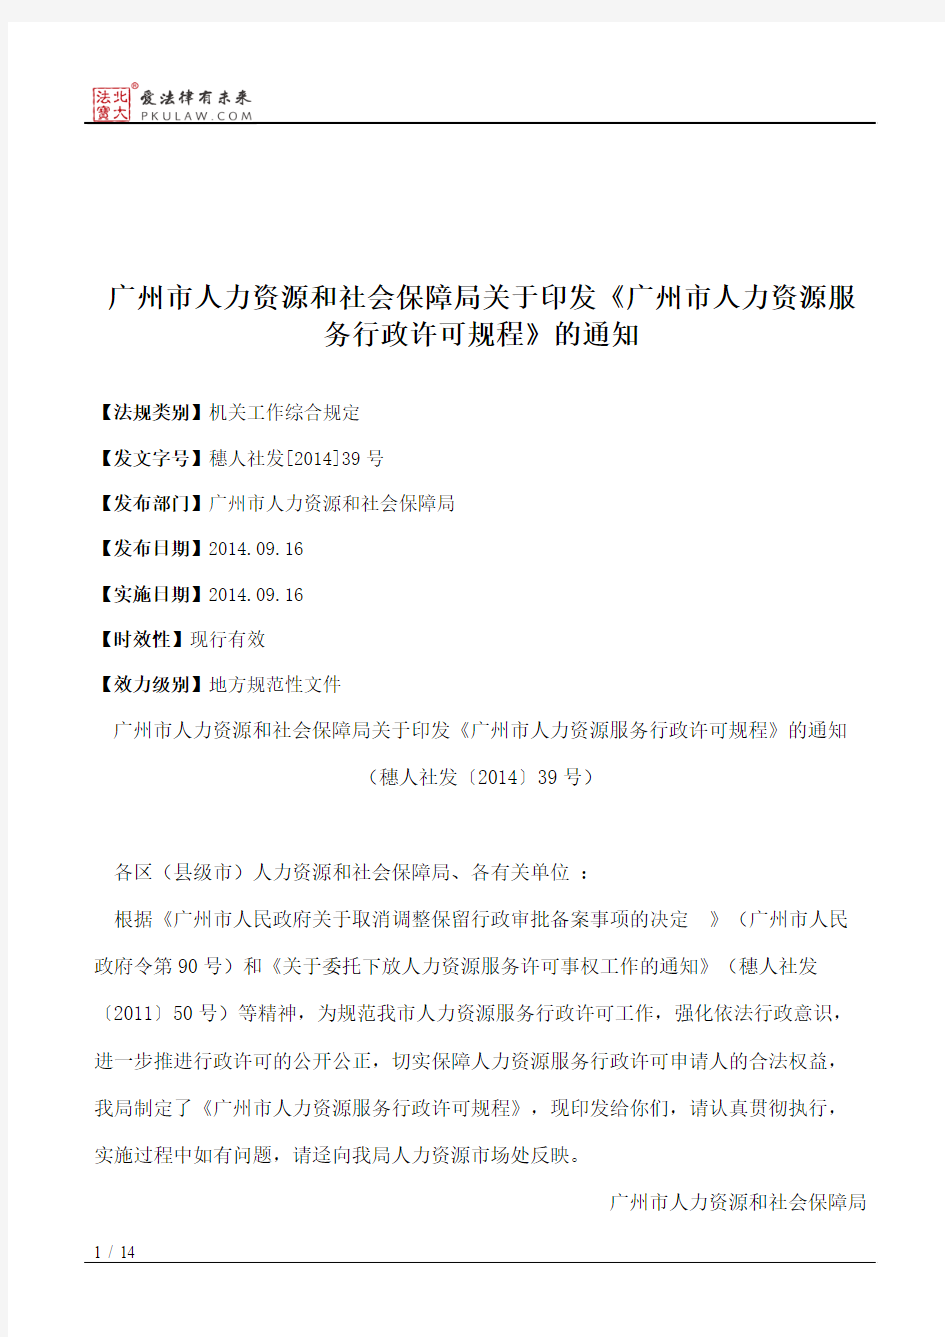 广州市人力资源和社会保障局关于印发《广州市人力资源服务行政许